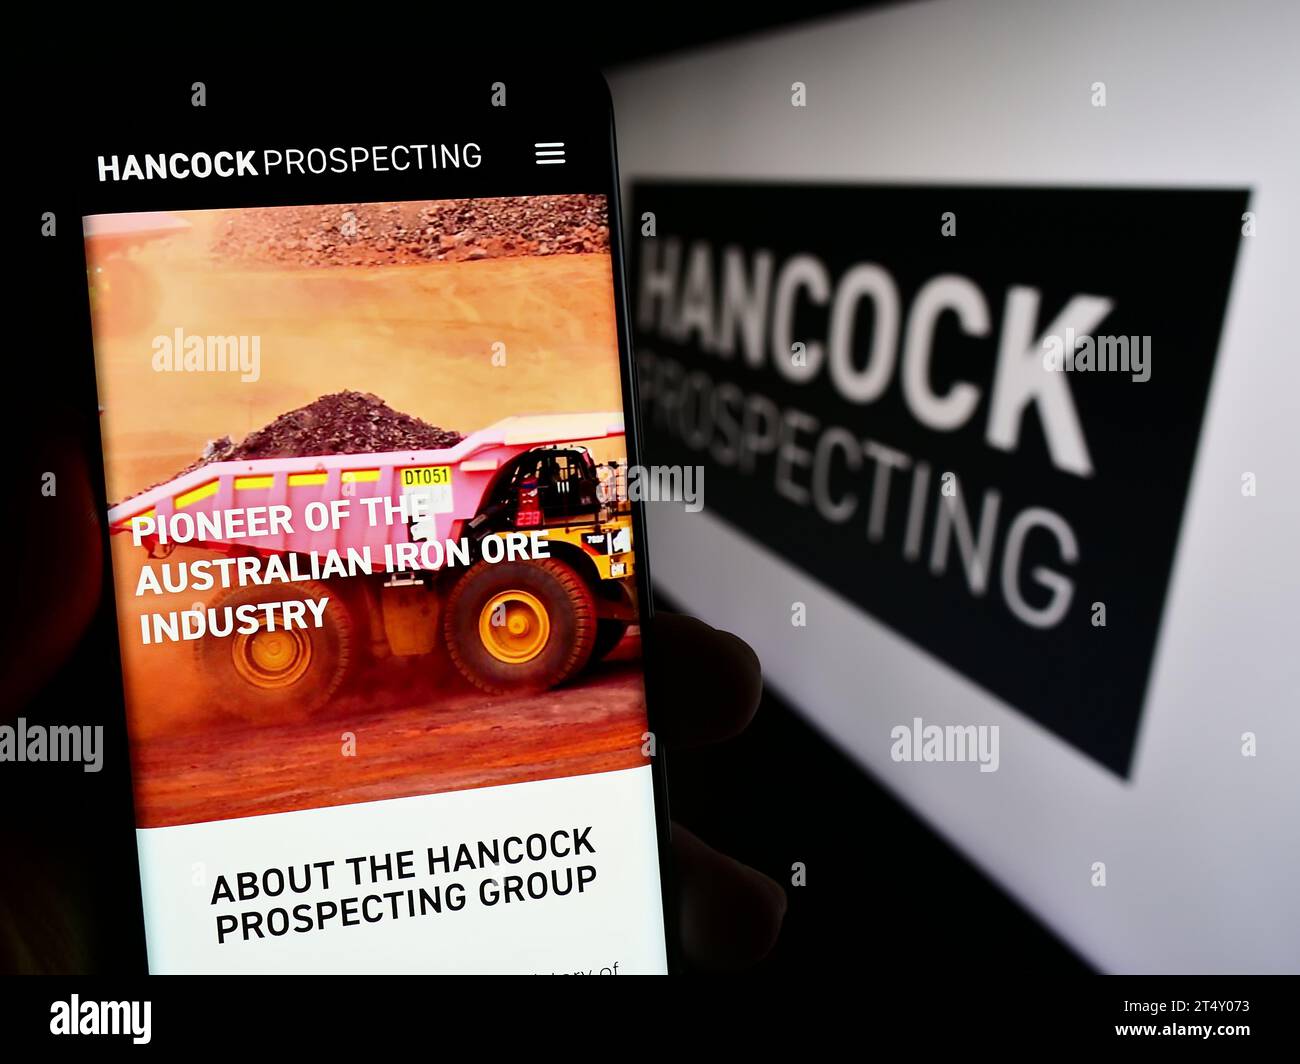 Persona in possesso di cellulare con pagina Web della società mineraria australiana Hancock Prospecting Pty. Ltd. Con logo. Concentrarsi sul centro del display del telefono. Foto Stock